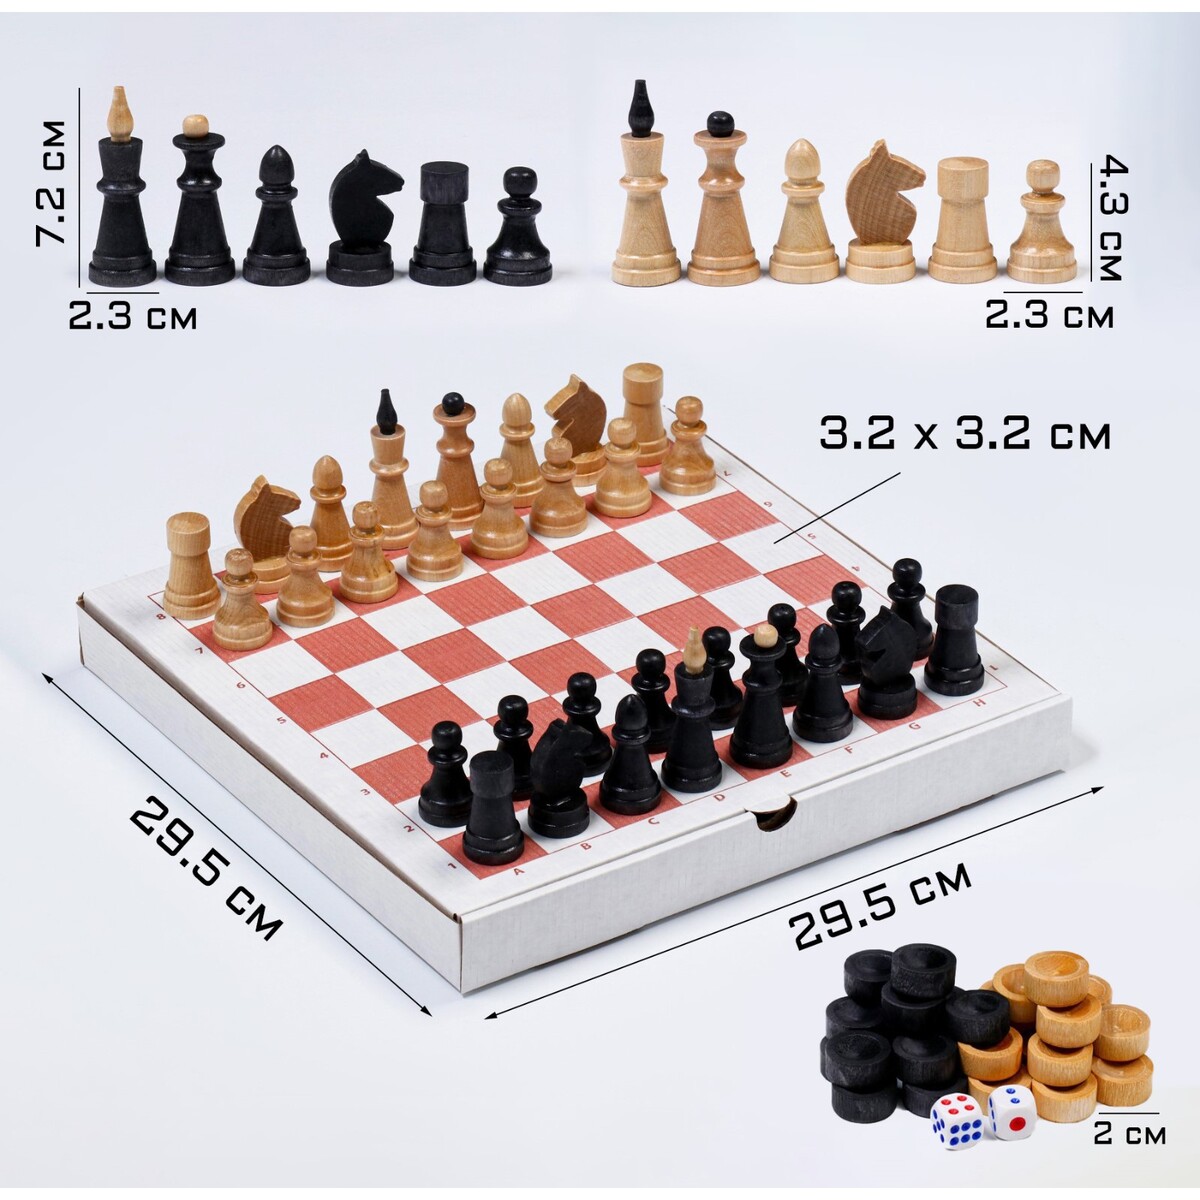 Настольная игра 3 в 1: шахматы, шашки, нарды, деревянные фигуры, доска 29.5 х 29.5 см настольная игра 3 в 1 шахматы шашки нарды деревянная доска 40 х 40 см